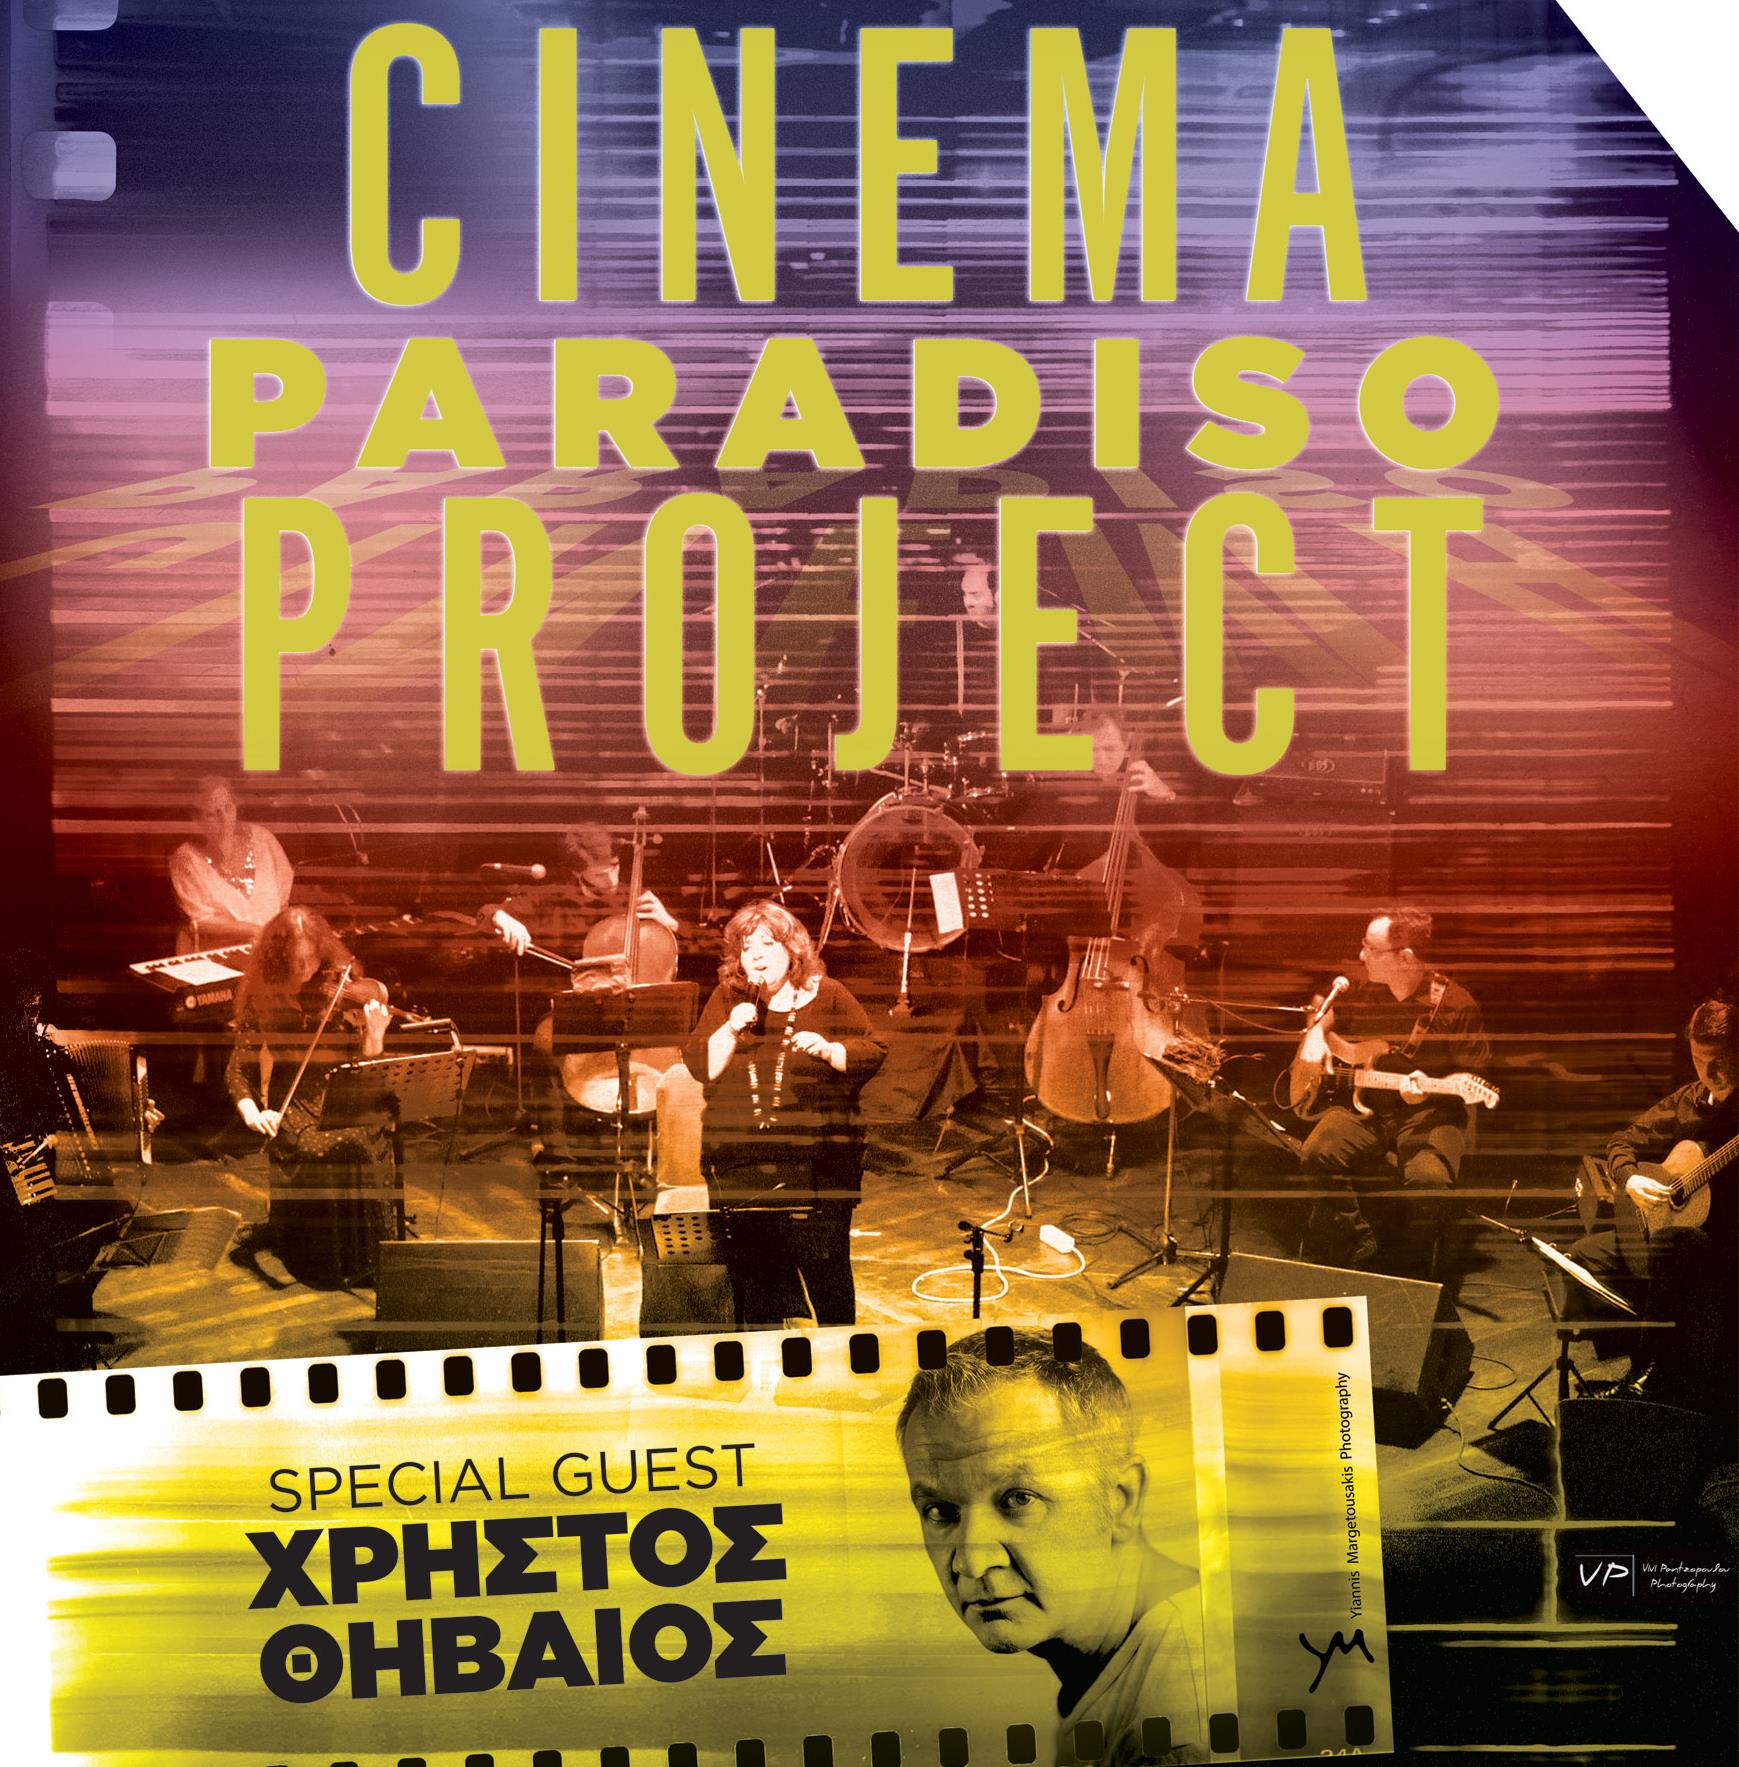 Οι Cinema Paradiso Project από τη μεγάλη οθόνη στη σκηνή με τον Χρήστο Θηβαίο